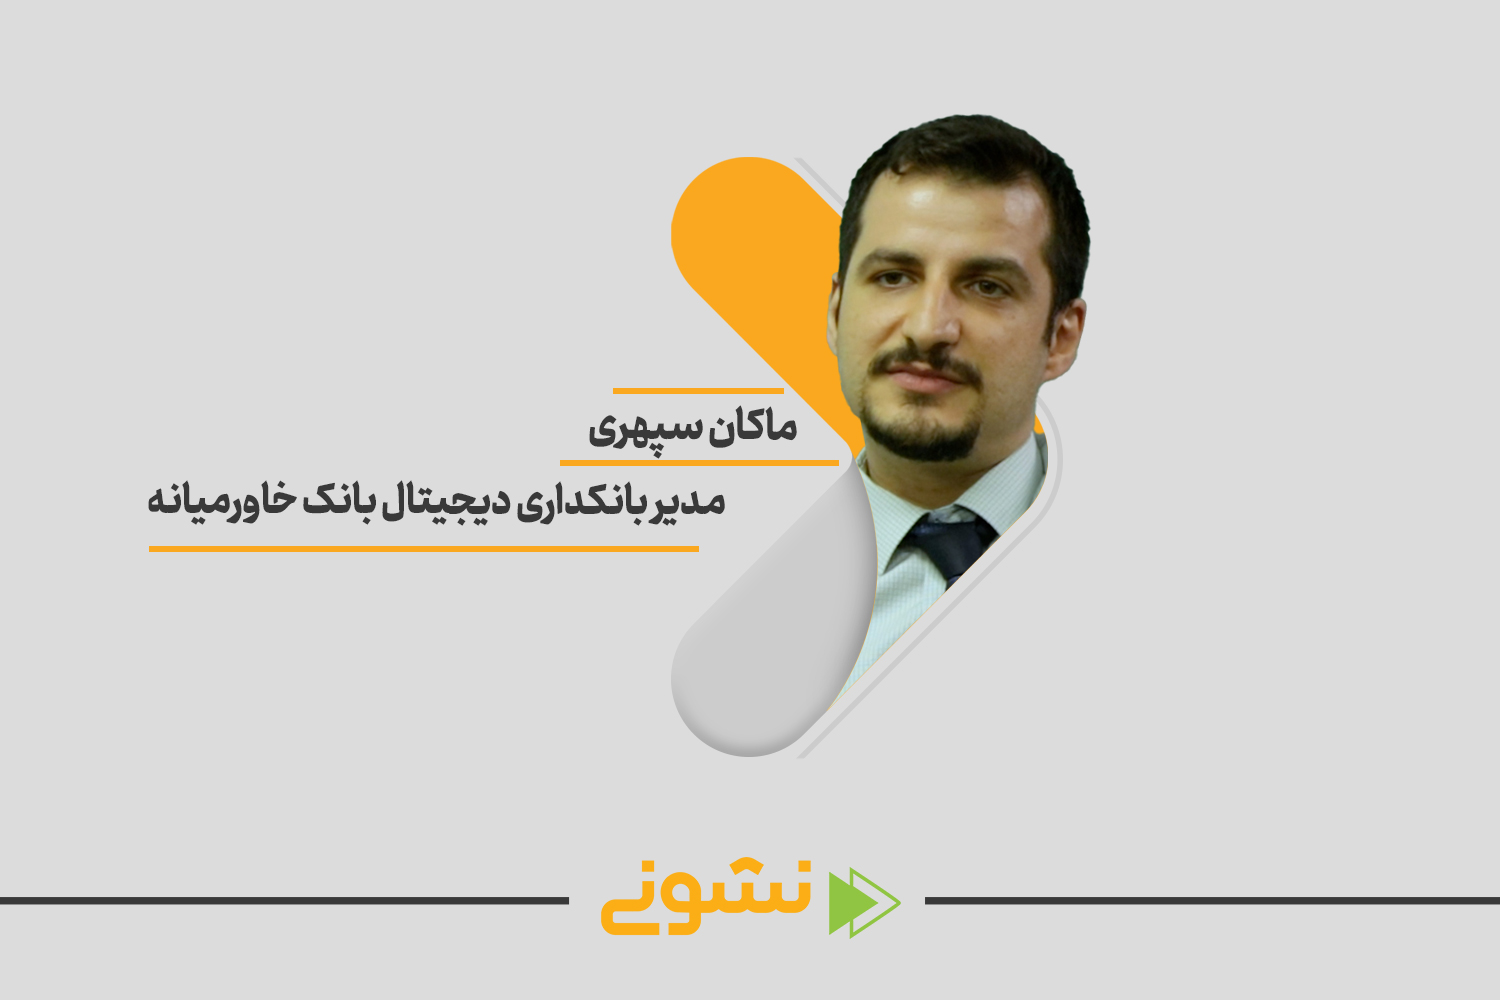 ماکان سپهری مدیر مدیر بانکداری دیجیتال بانک خاورمیانه در سایت 100استارتاپ